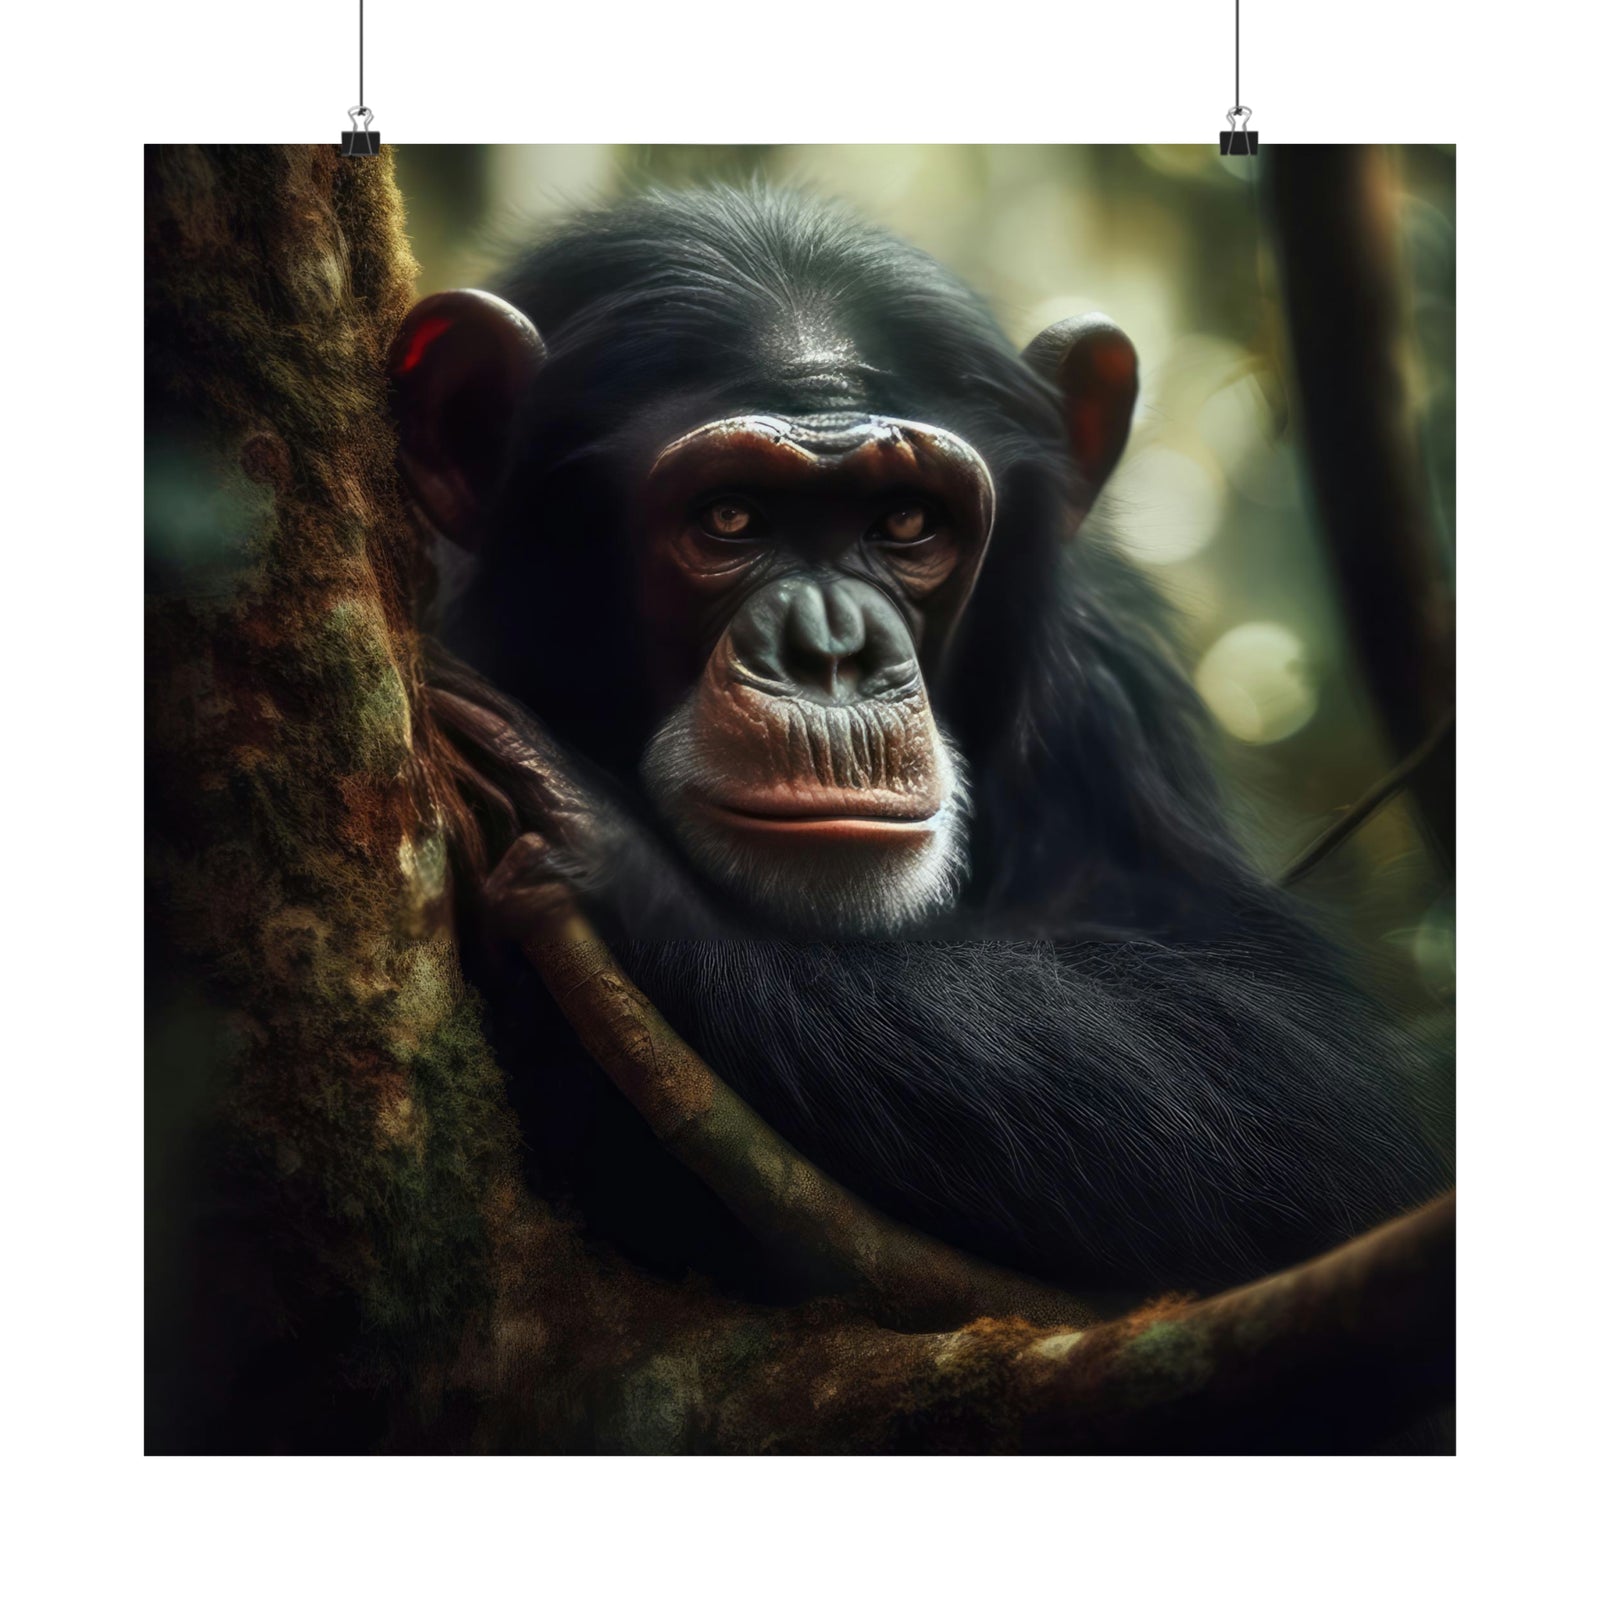 Le paradis d'un primate sauvage Poster